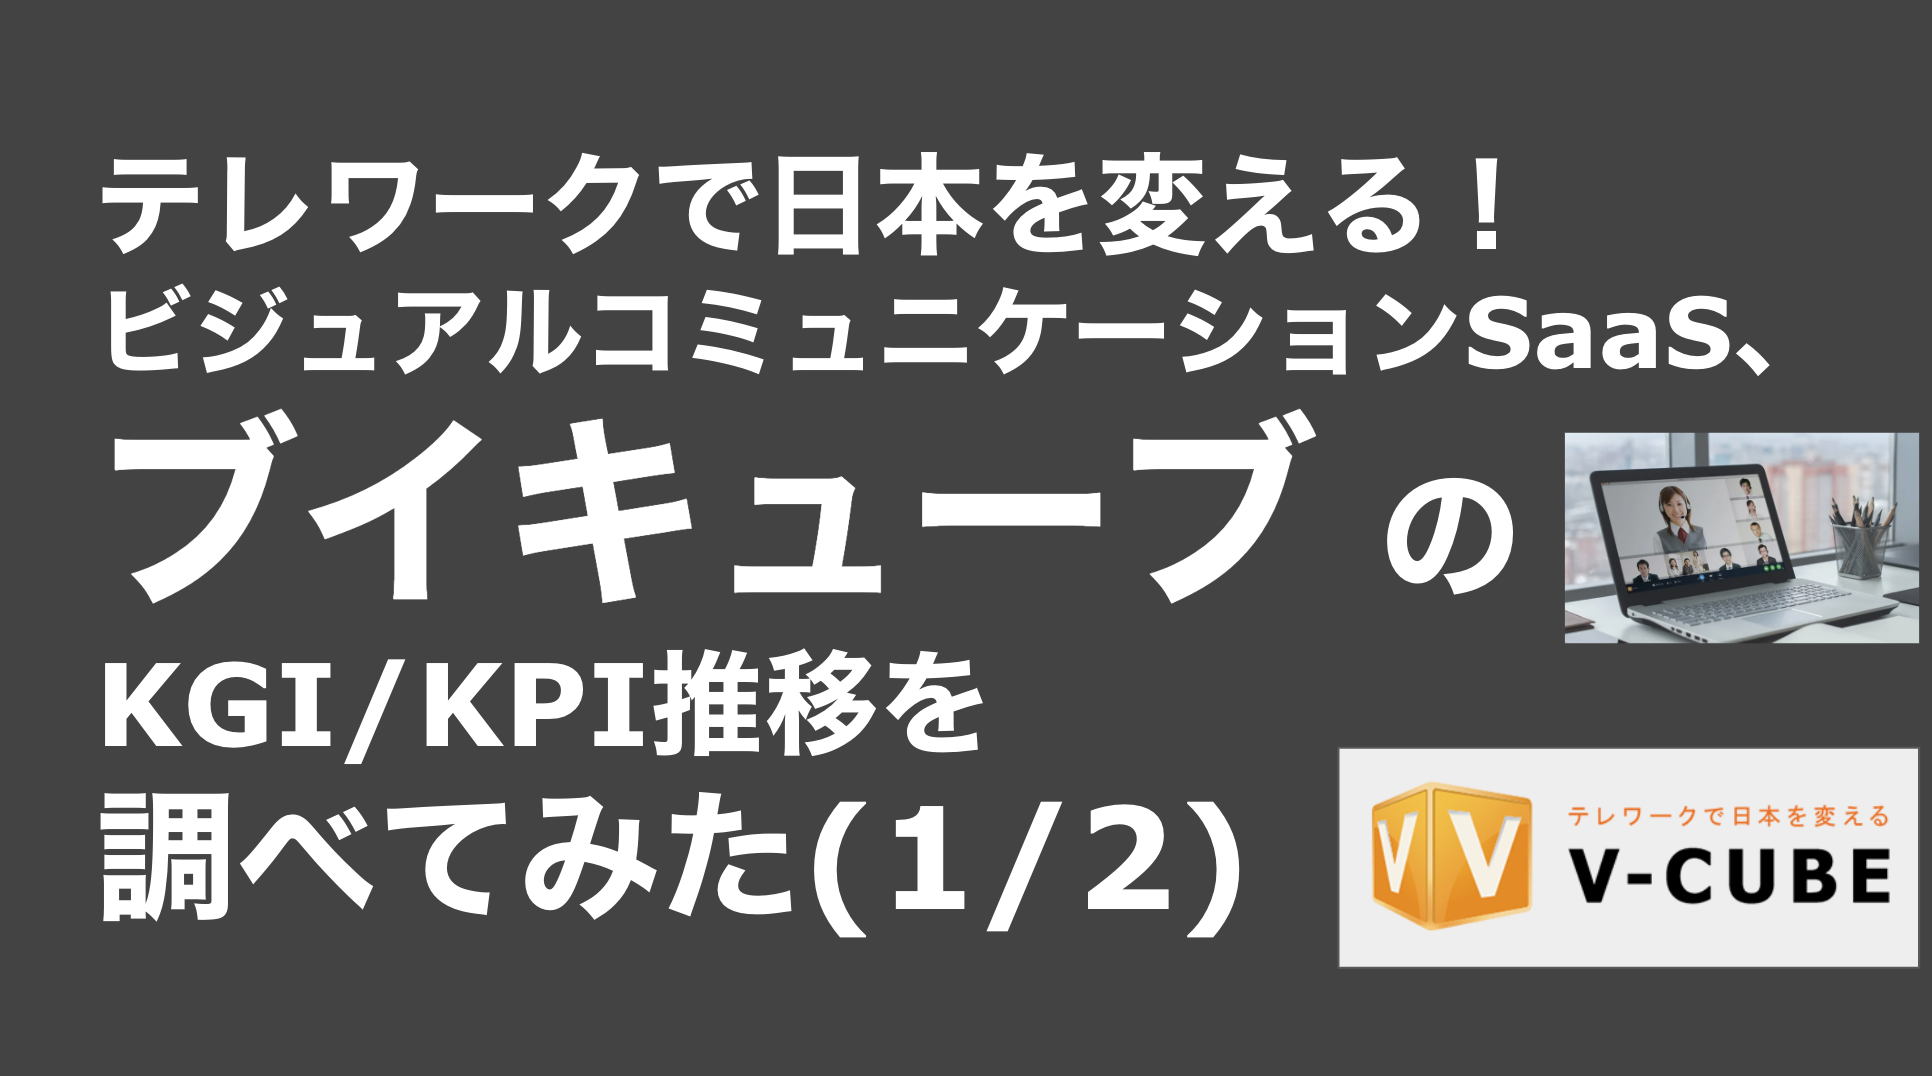 saaslife_テレワークで日本を変える！ビジュアルコミュニケーションSaaS、ブイキューブ のKGI/KPI推移を調べてみた(1/2)